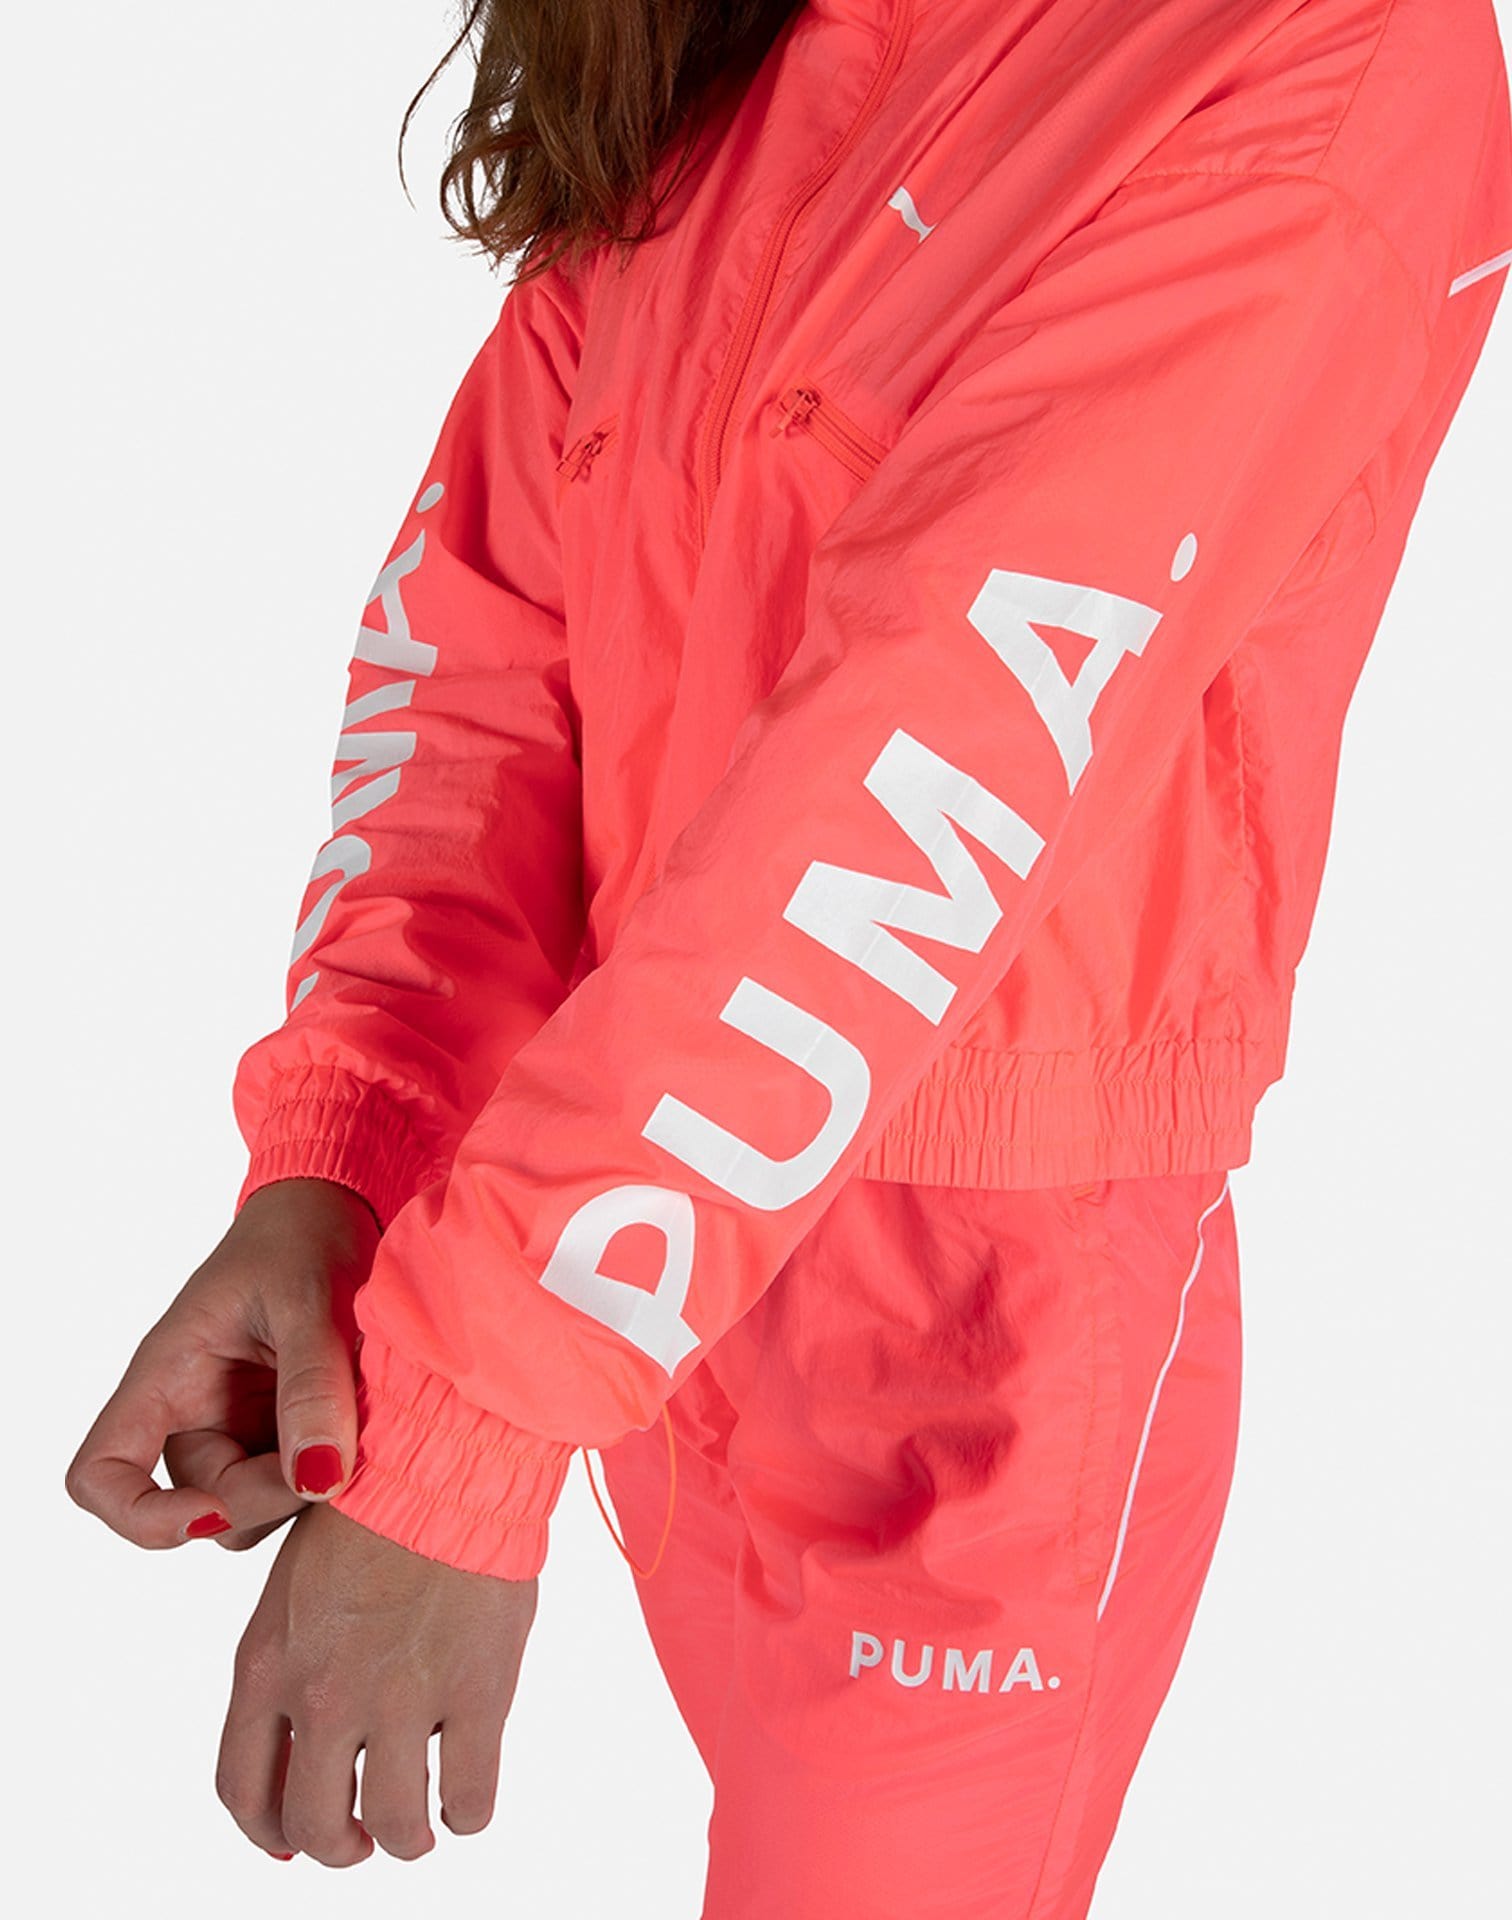 PUMA Women's Chase Woven Jacket